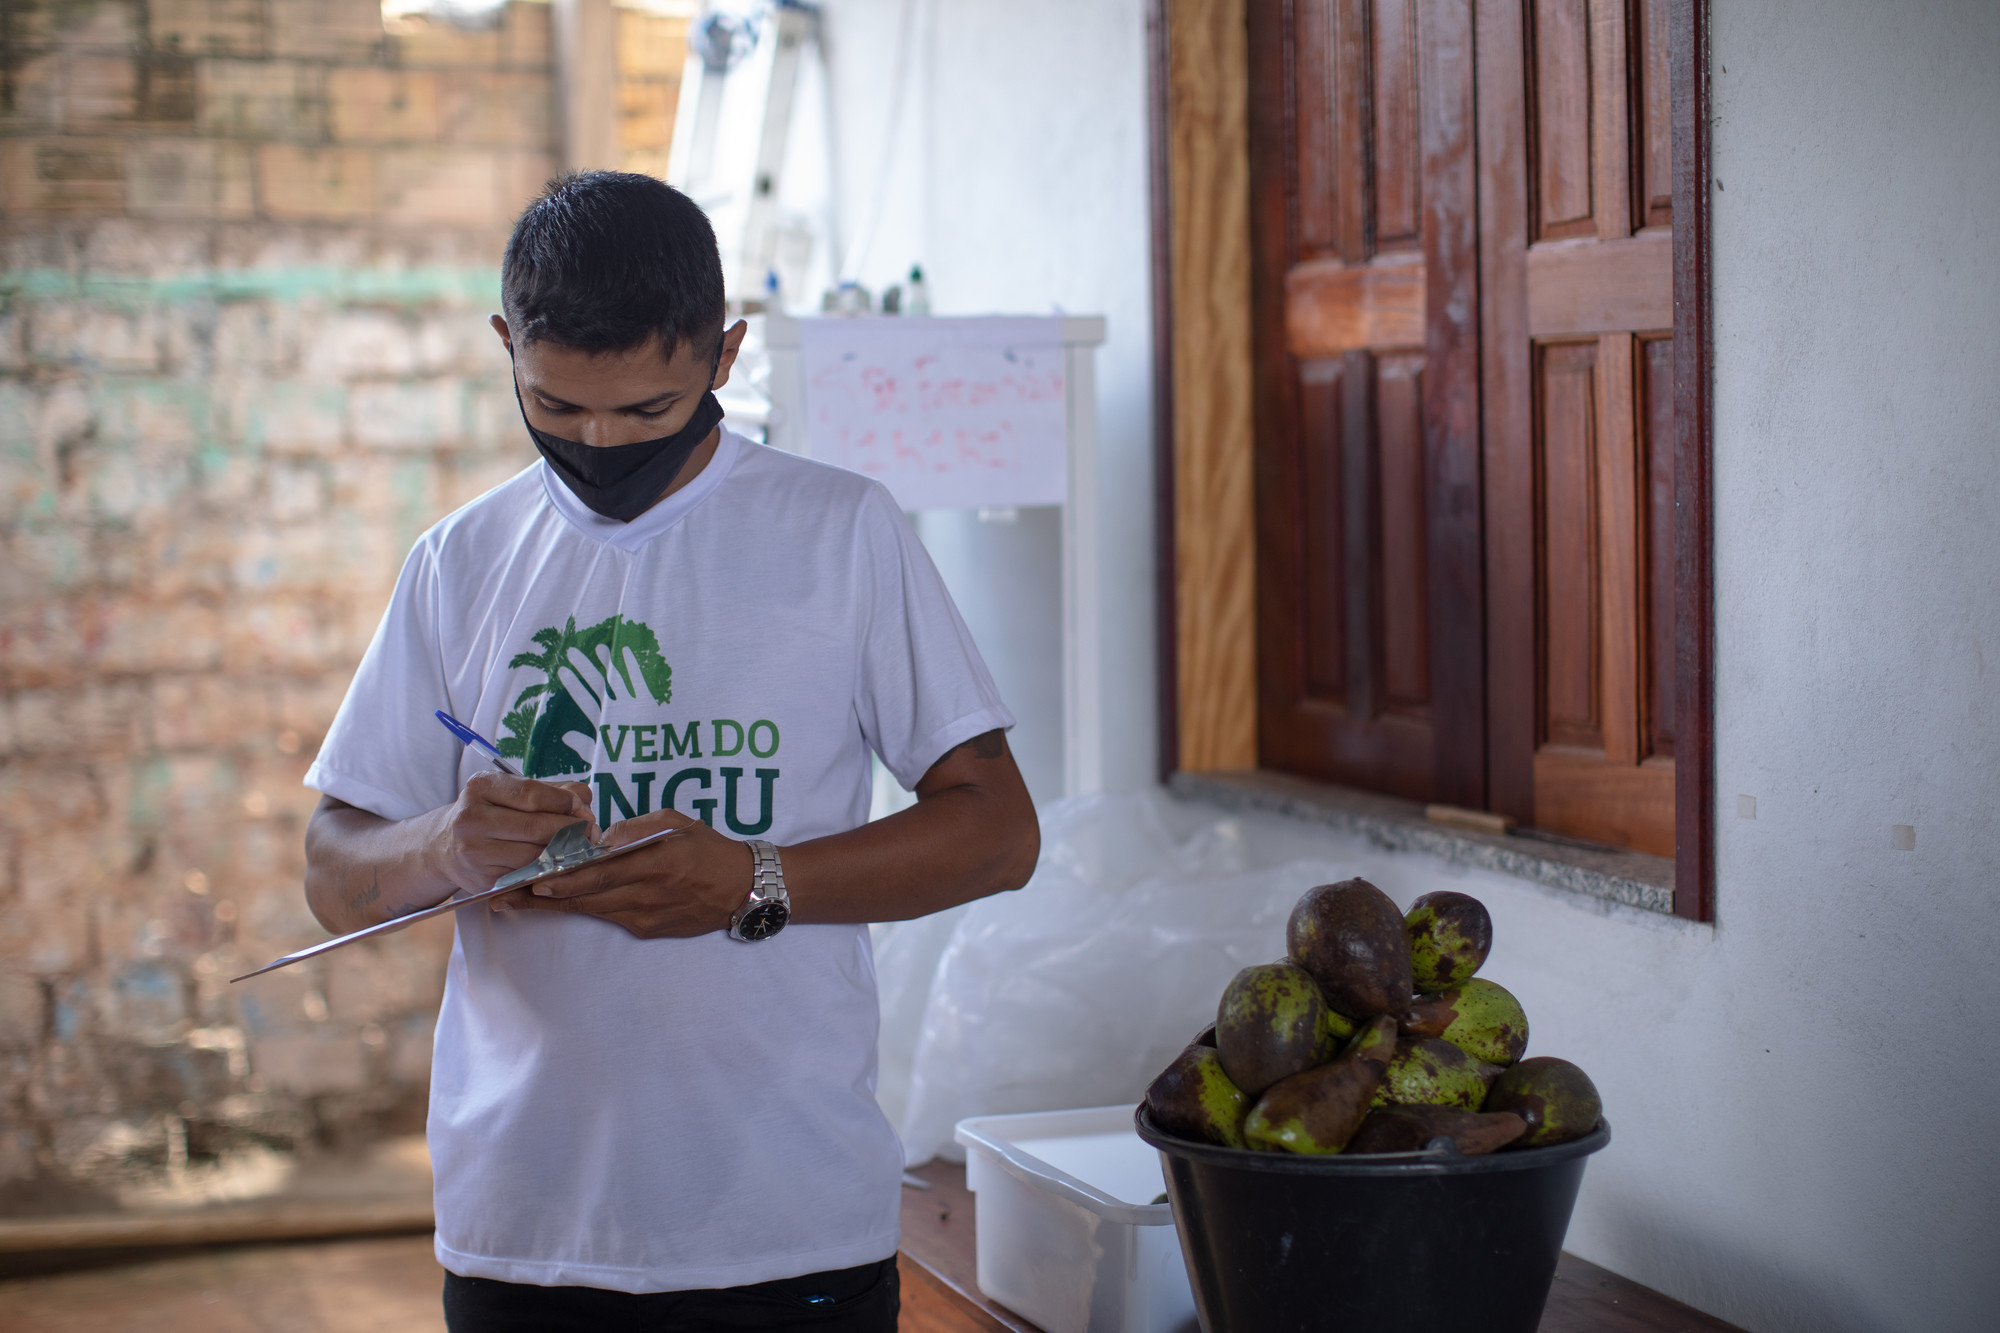 Marcelino colabora na preparação de cestas com alimentos produzidos pelas comunidades ribeirinhas da Rede de Cantinas da Terra do Meio|Carol Quintanilha/ISA